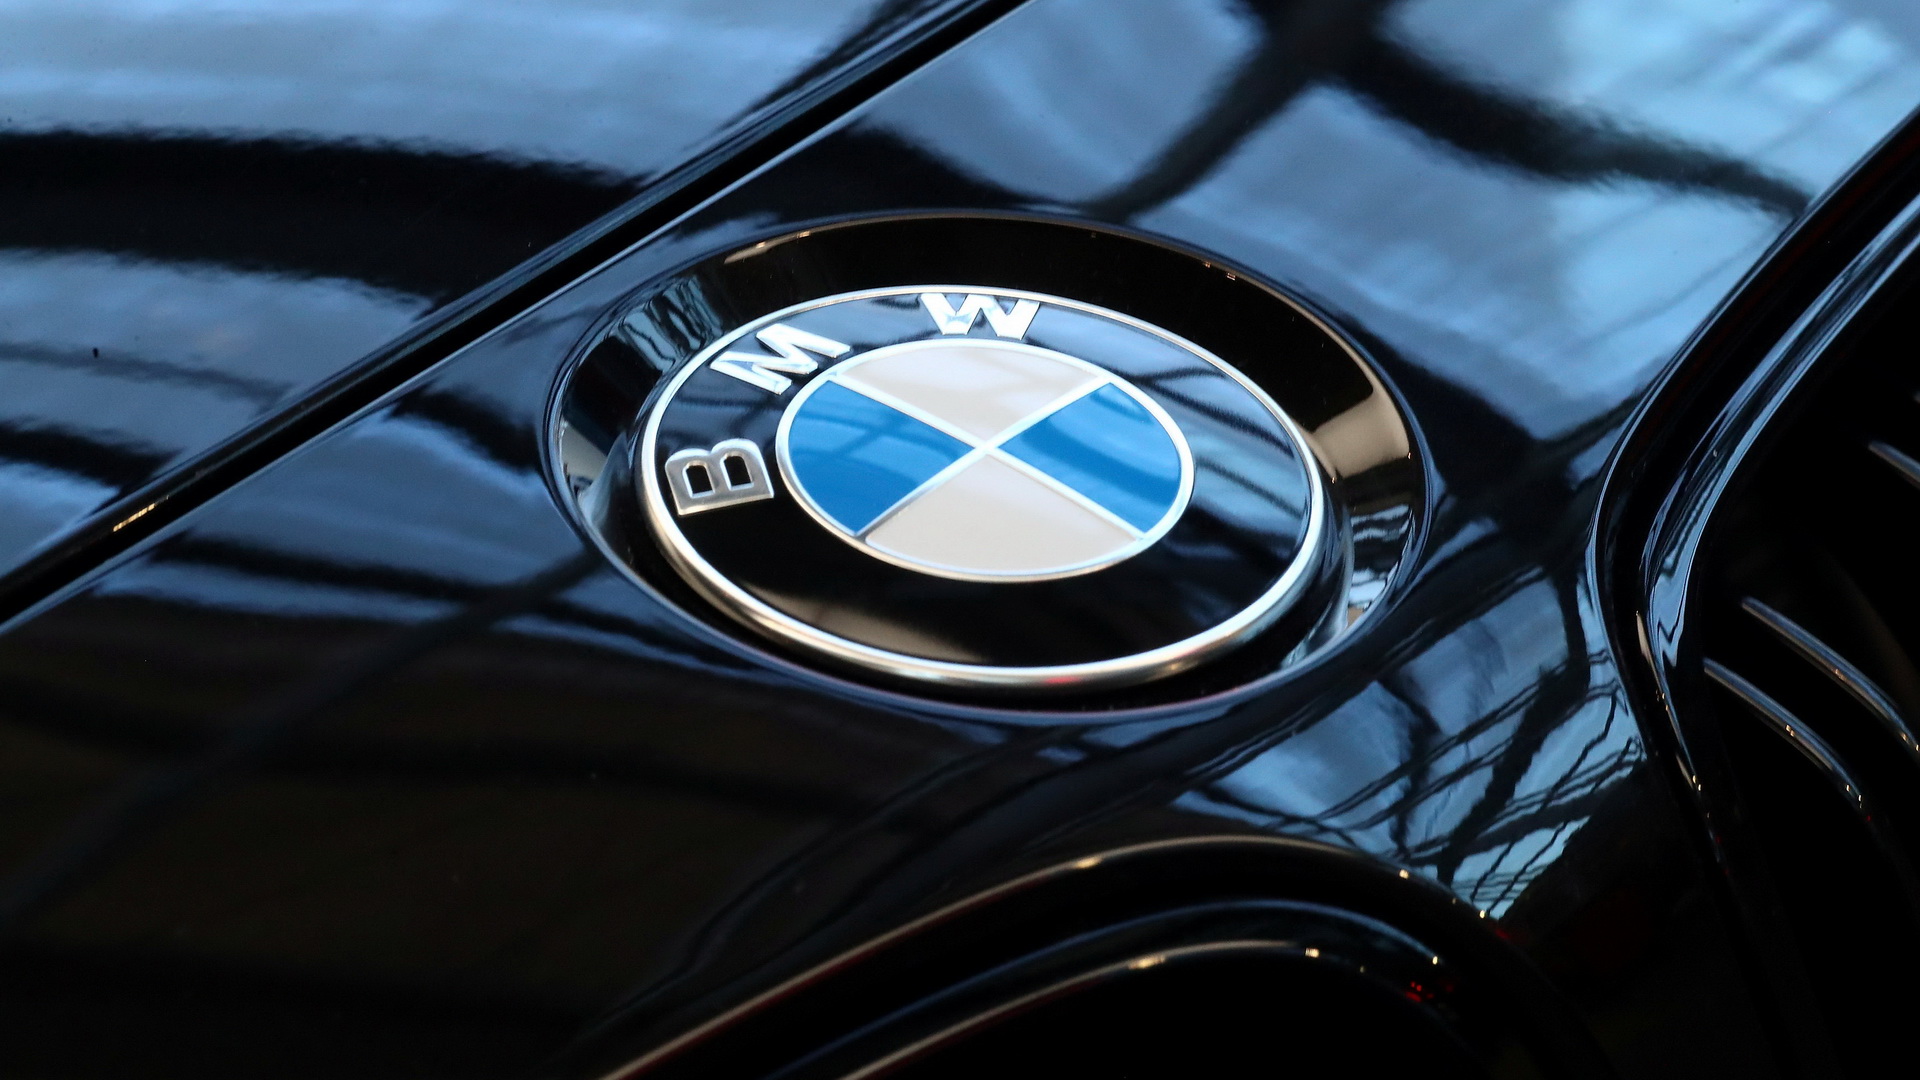 Τα δέκα ισχυρότερα μοτέρ παραγωγής που έχει φτιάξει η BMW! [pics]